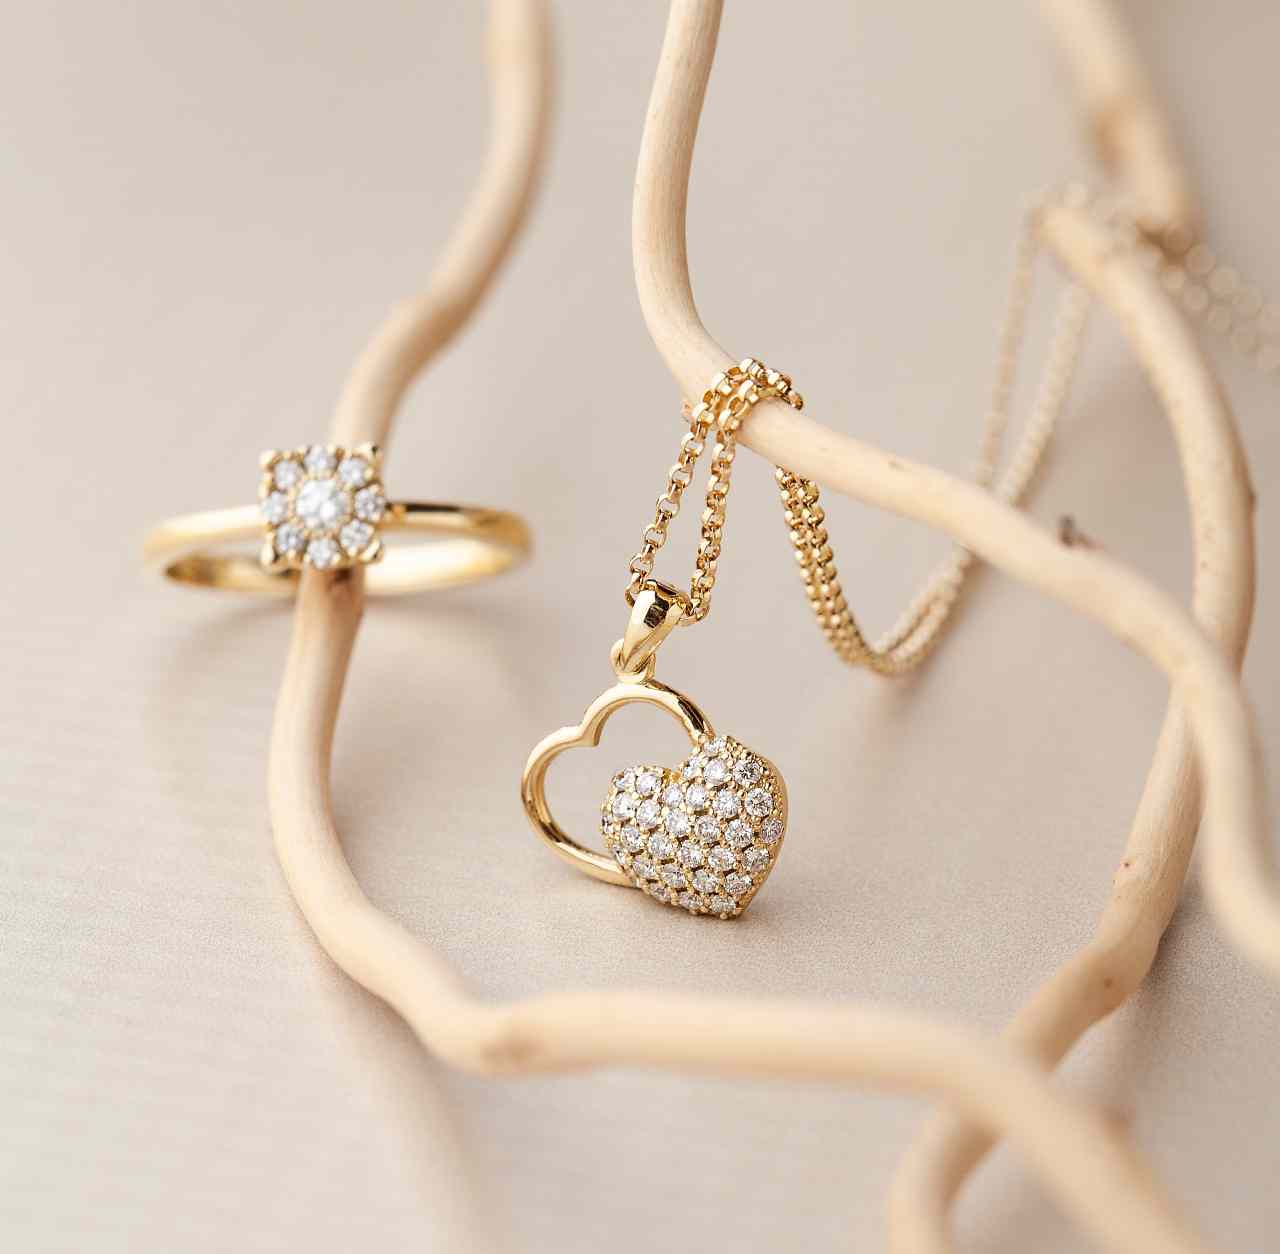 Zlatara Andrejević - Zlatara Andrejević nudi veliki izbor najlepšeg, ručno  rađenog nakita visokog kvaliteta. Uživajte u izuzetnoj ponudi nakita koji  smo odabrali za Vas.